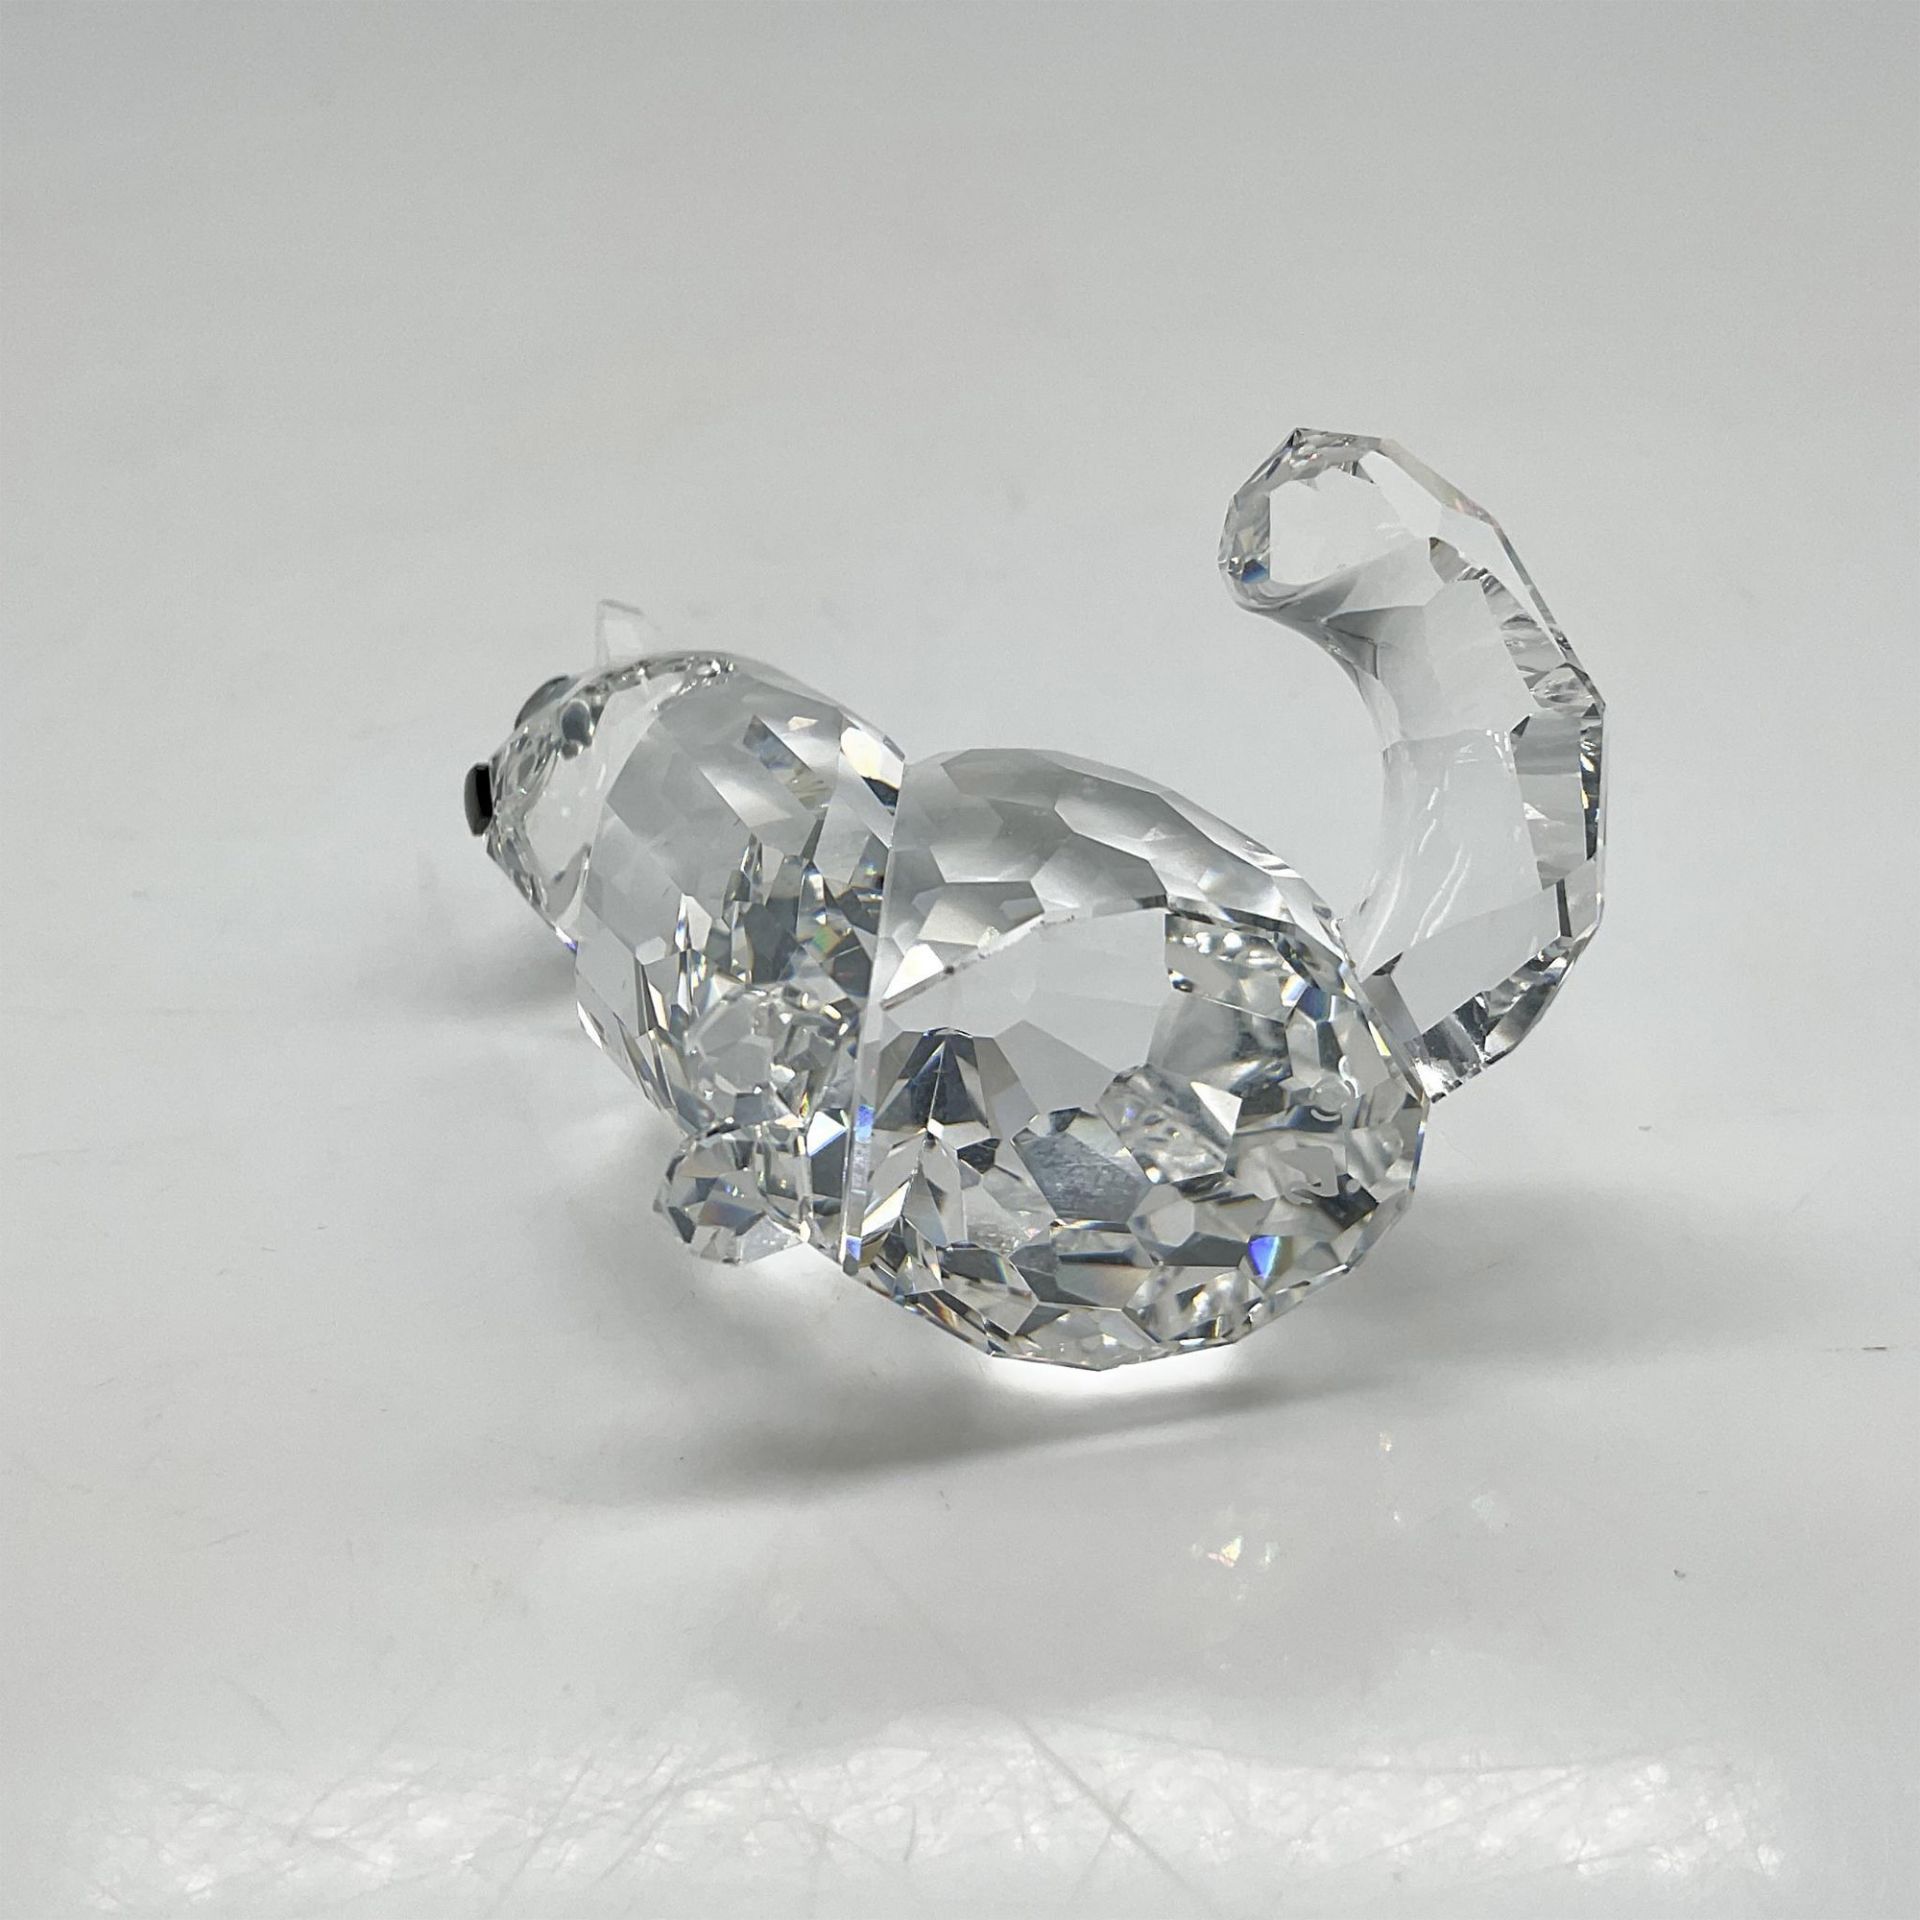 Swarovski Silver Crystal Figurine, Sitting Cat - Bild 3 aus 4